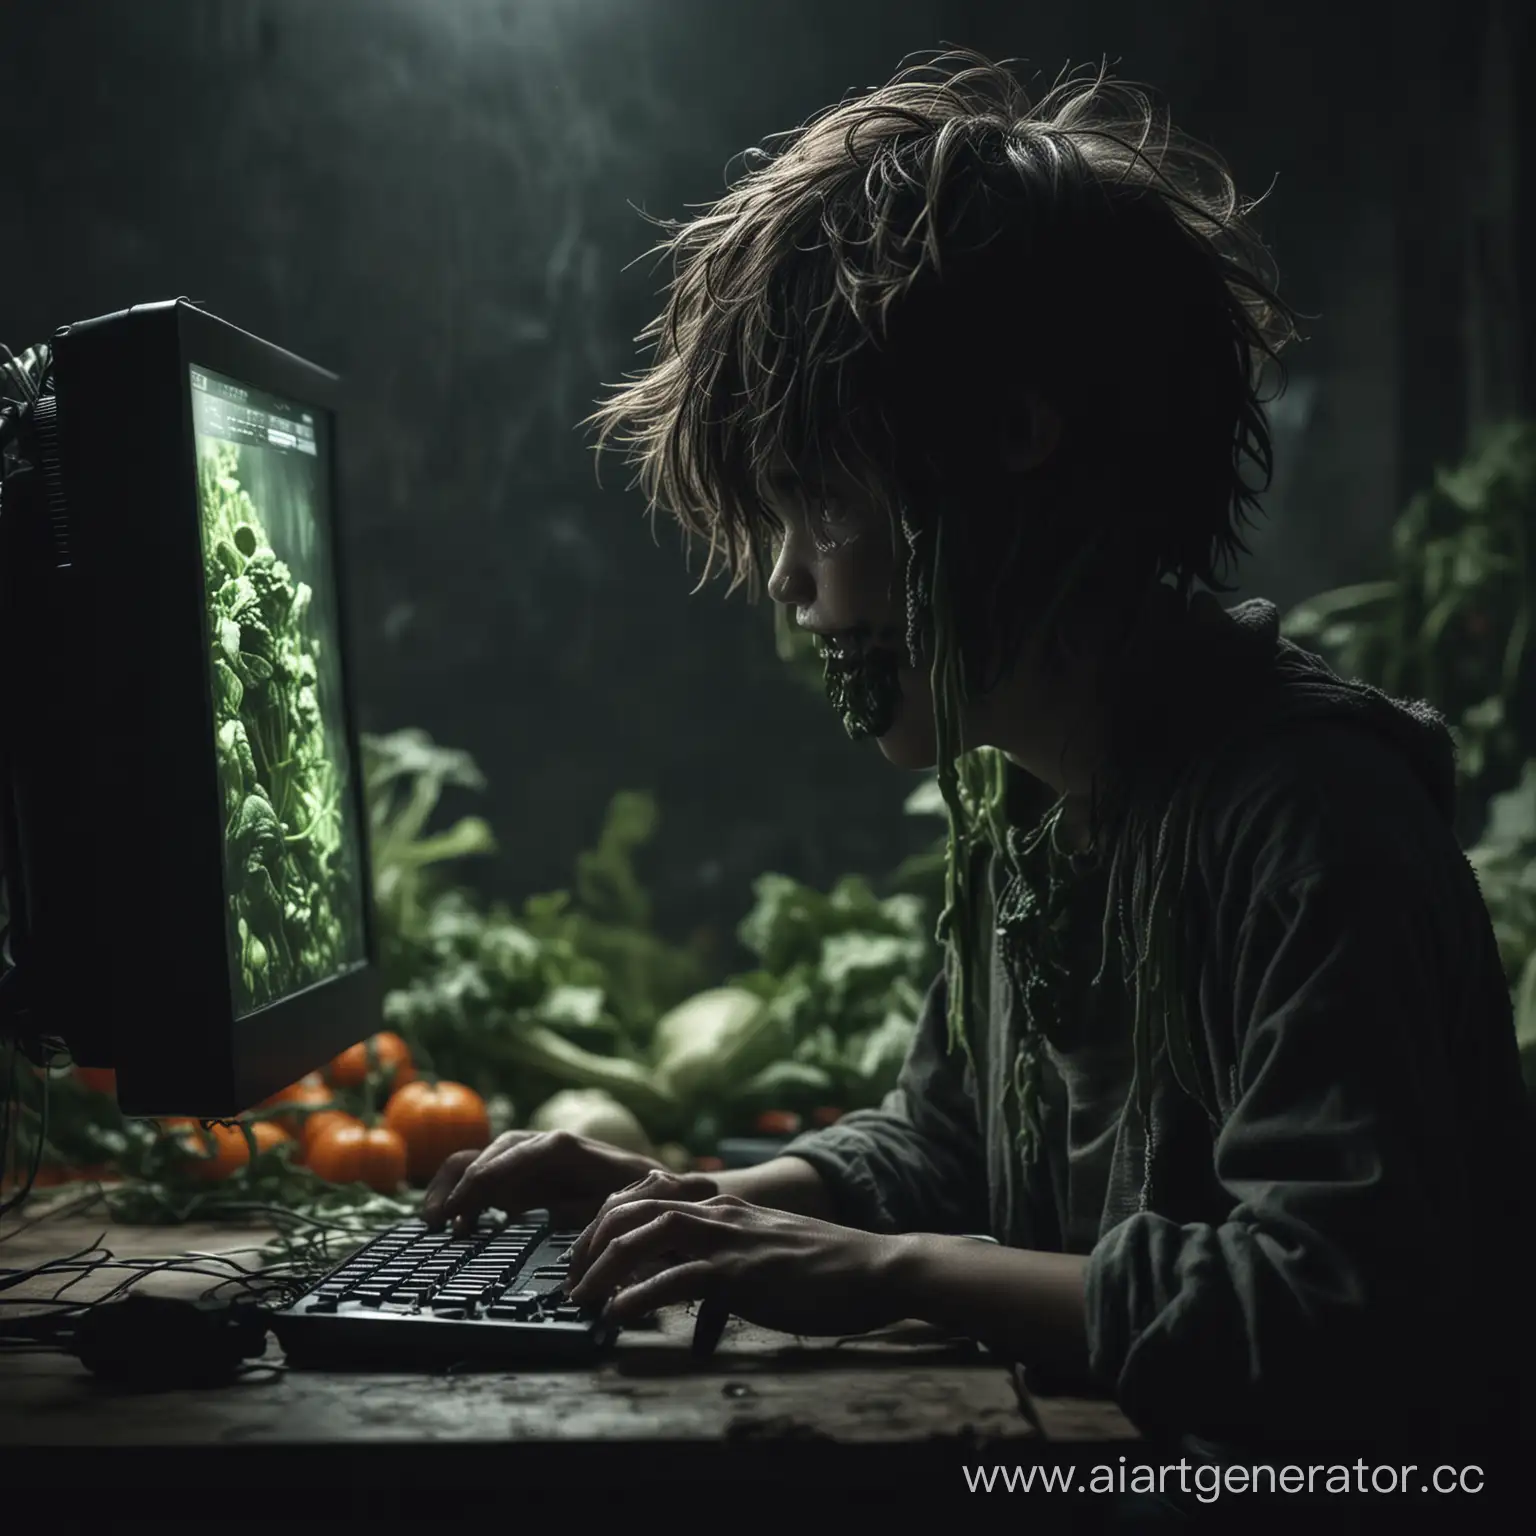 Страшная атмосфера, темно, мальчик сидит за компьютером и превращается в мутанта, он уже овощ